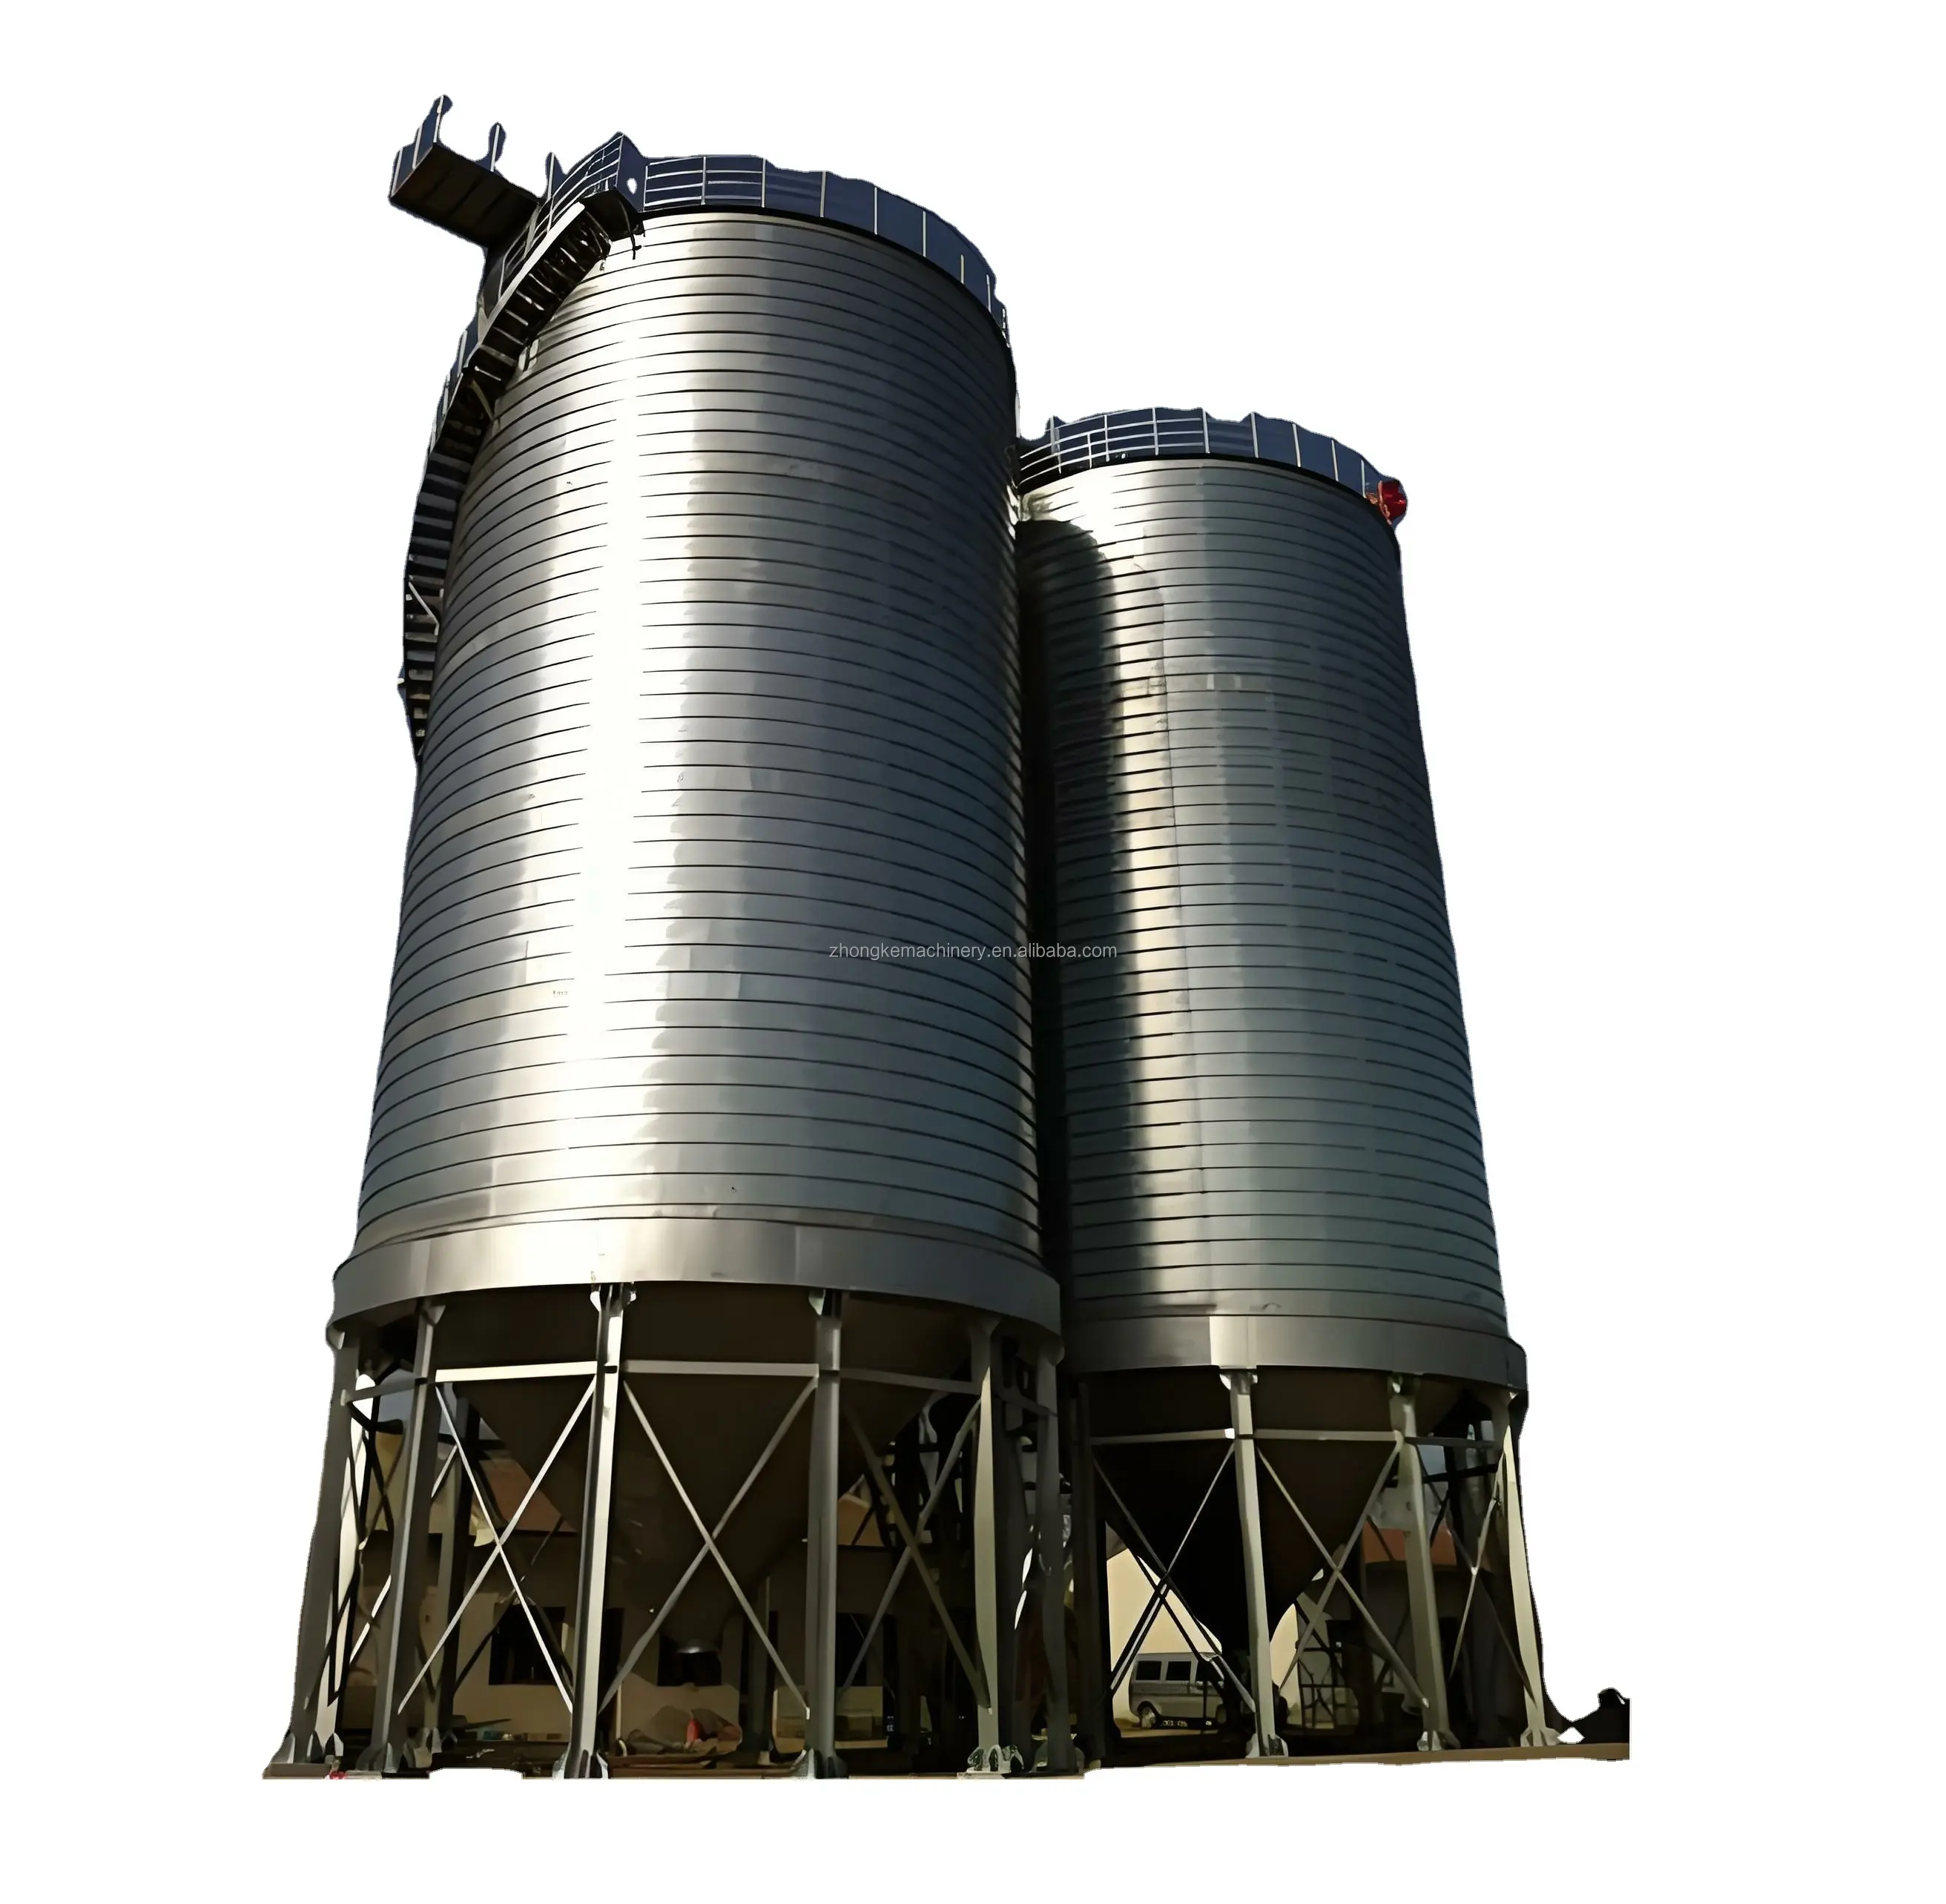 Guter Preis Kosten 500 Tonnen Weizen Mais Mais Aufbewahrung Tank Edelstahl Getreide-Aufbewahrungs-Silo